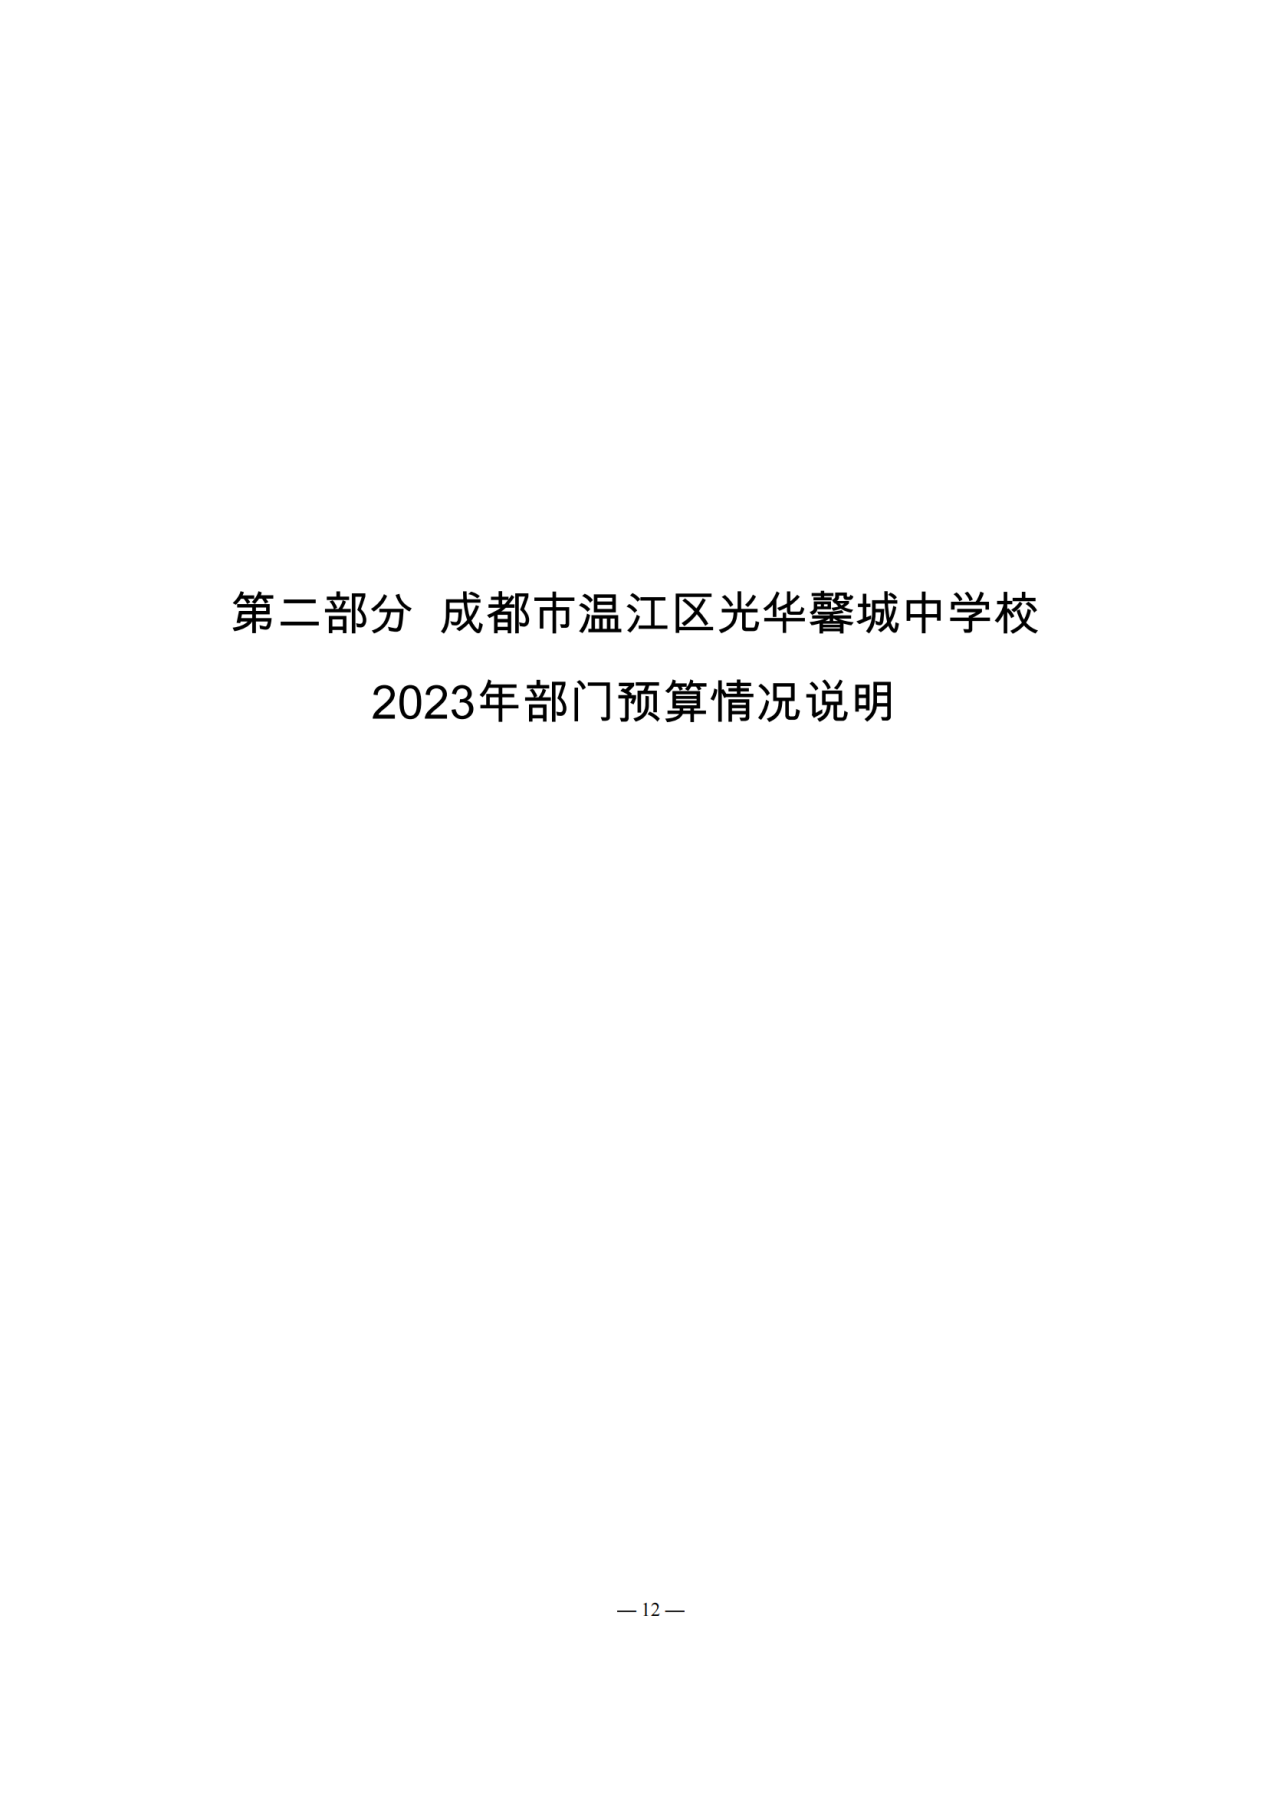 成都市温江区光华馨城中学校2023年预算公开_11